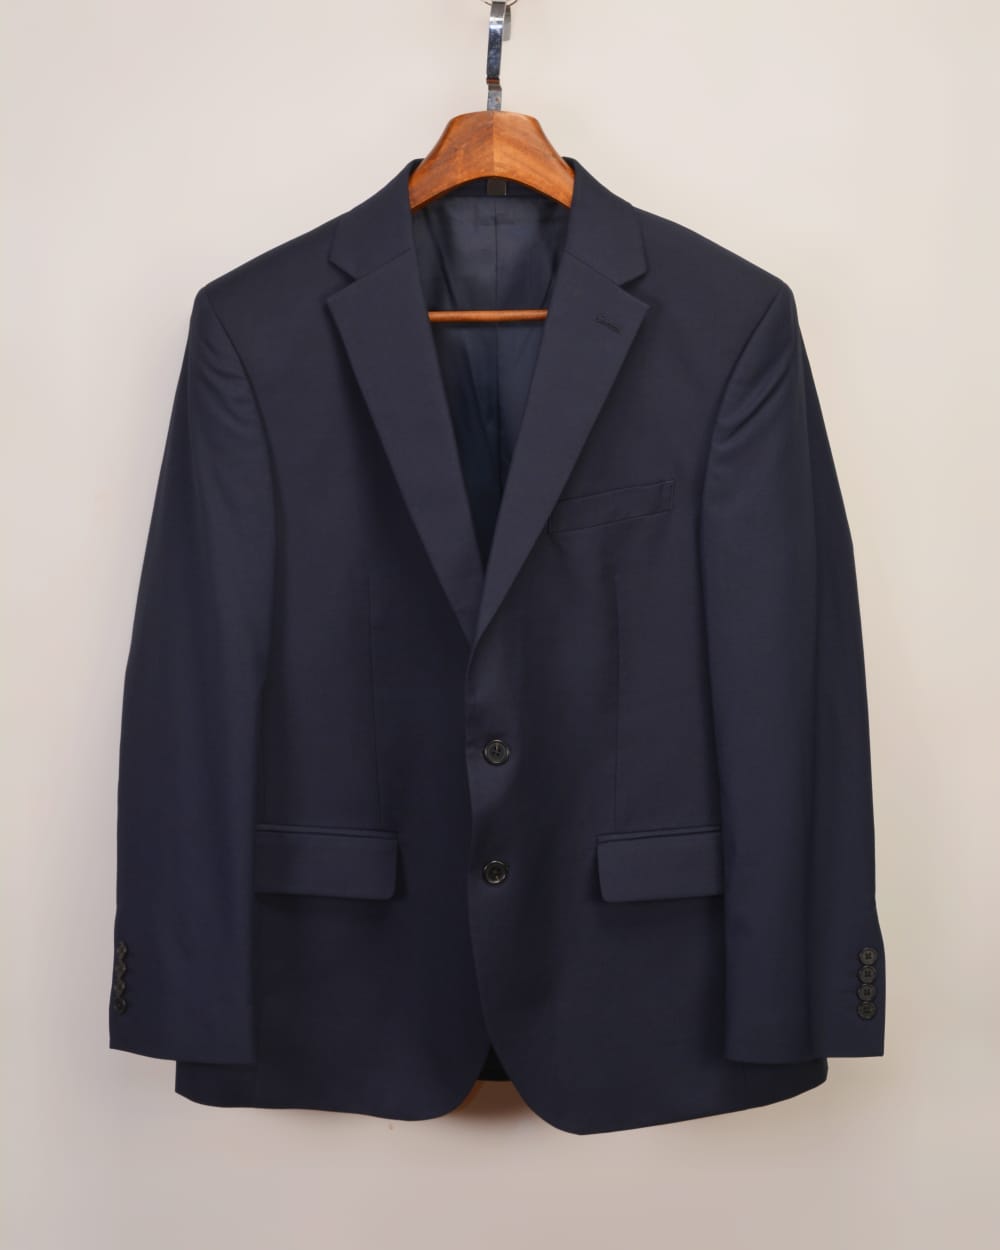 Mens Jacket and Coat : Buy Mens Jacket and Coat Online At M&S Inda